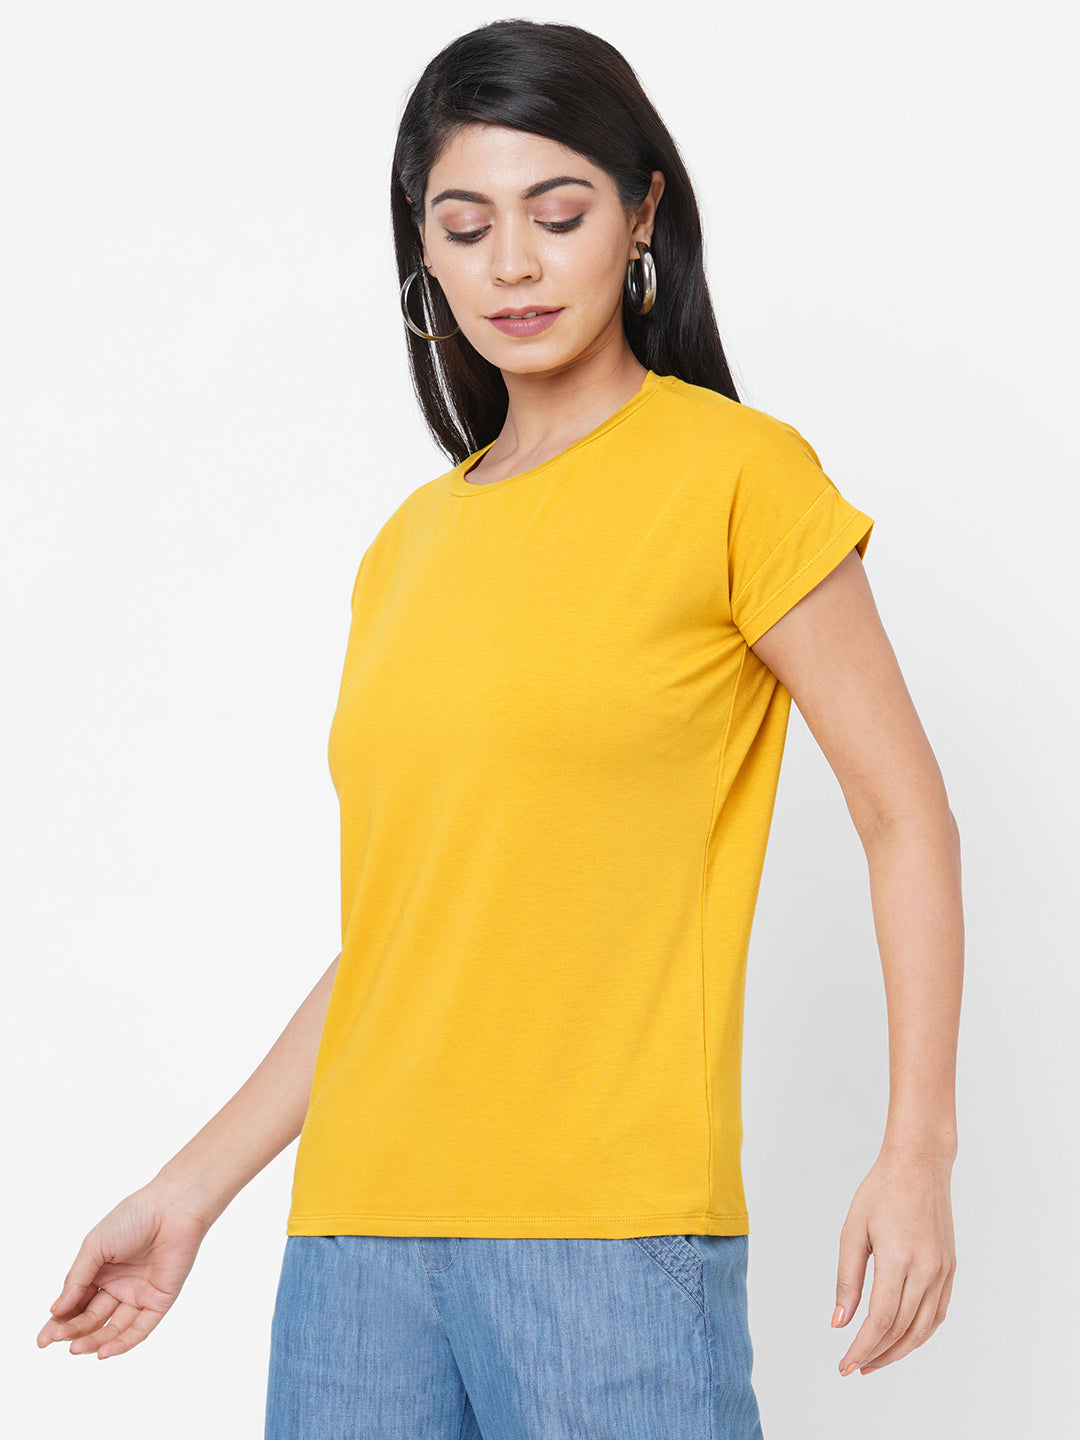 Womens Bamboo Cotton Elastane Yellow Regular Fit Tshirt